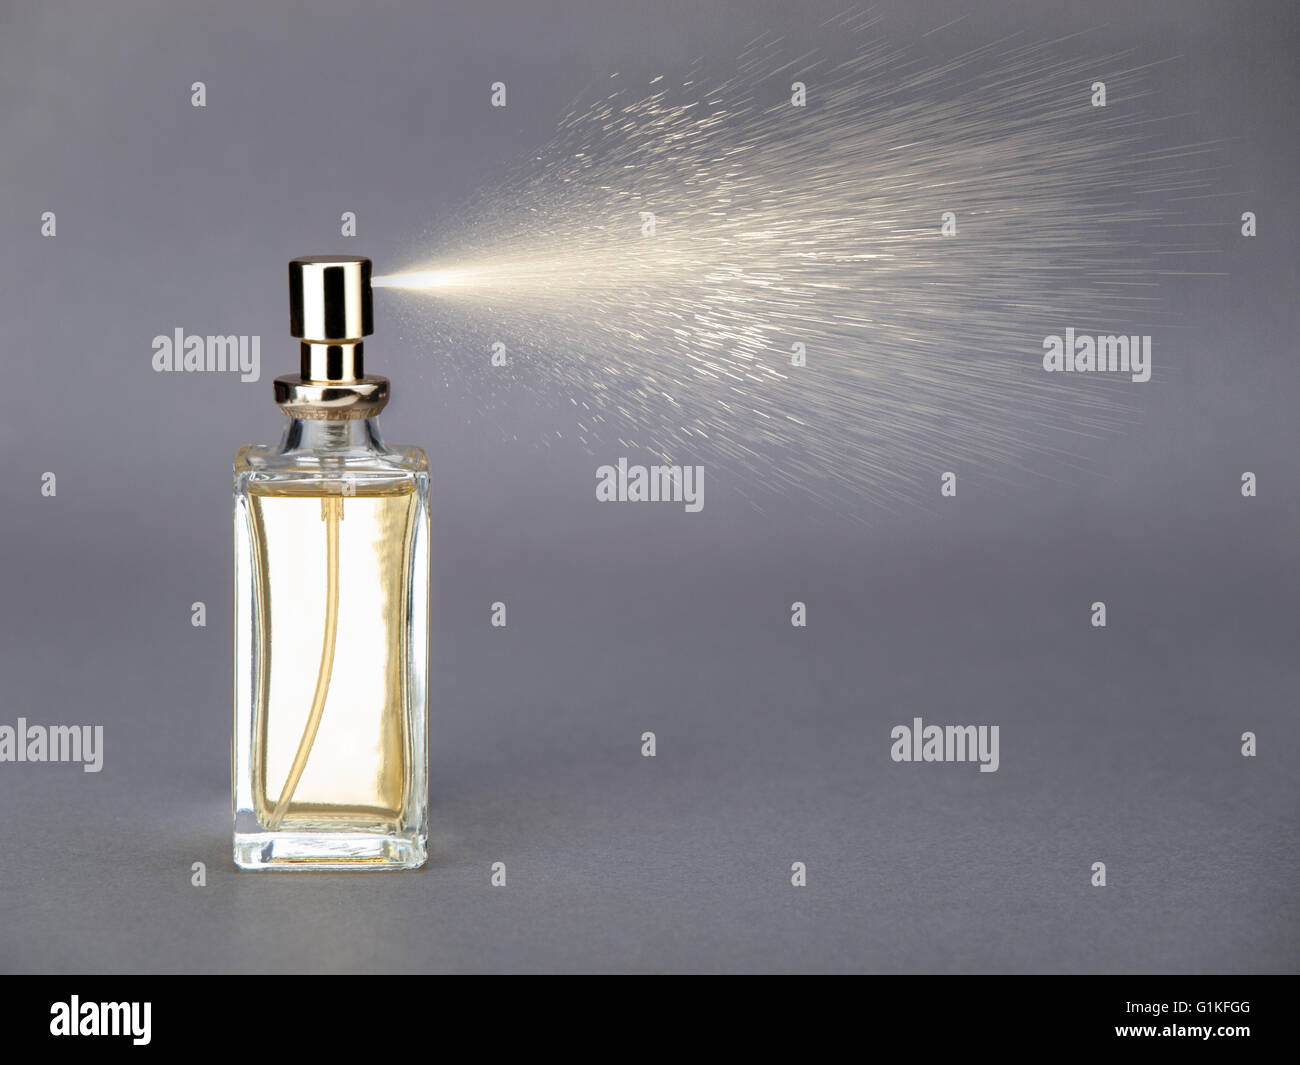 Flasche Parfüm besprühen Stockfotografie - Alamy